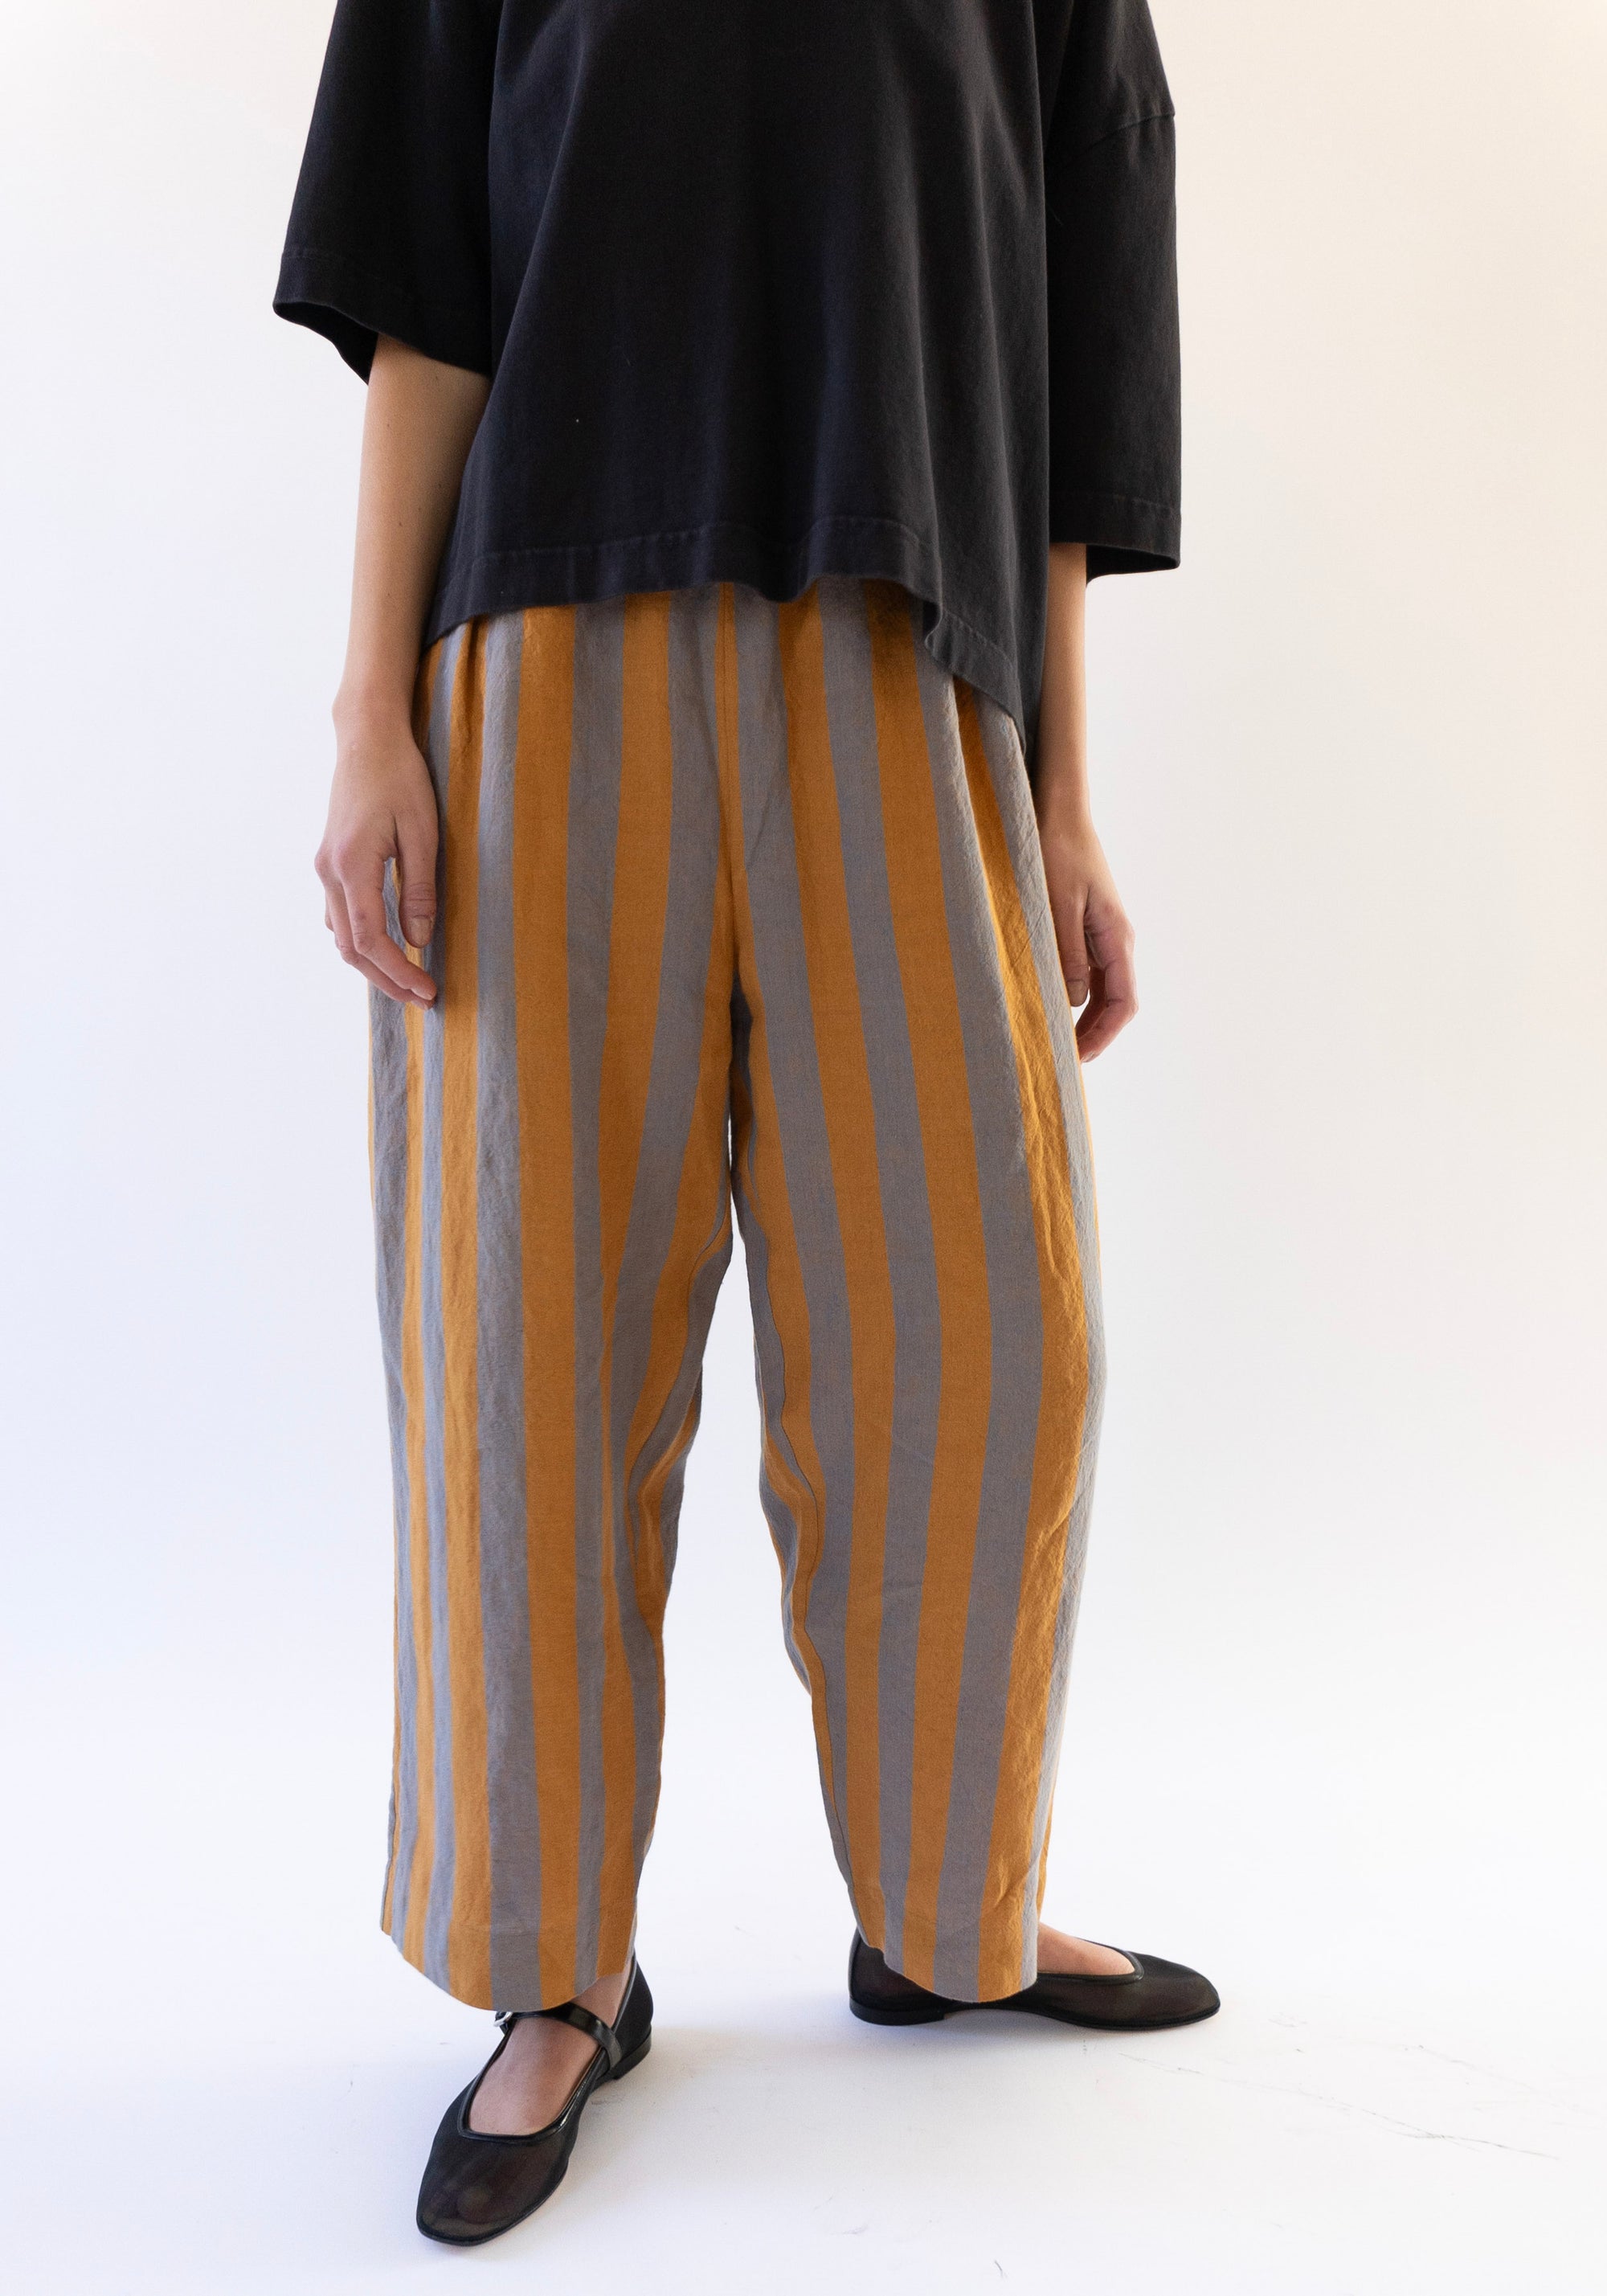 Cawley Luna Trousers in Bronze Denim Stripe